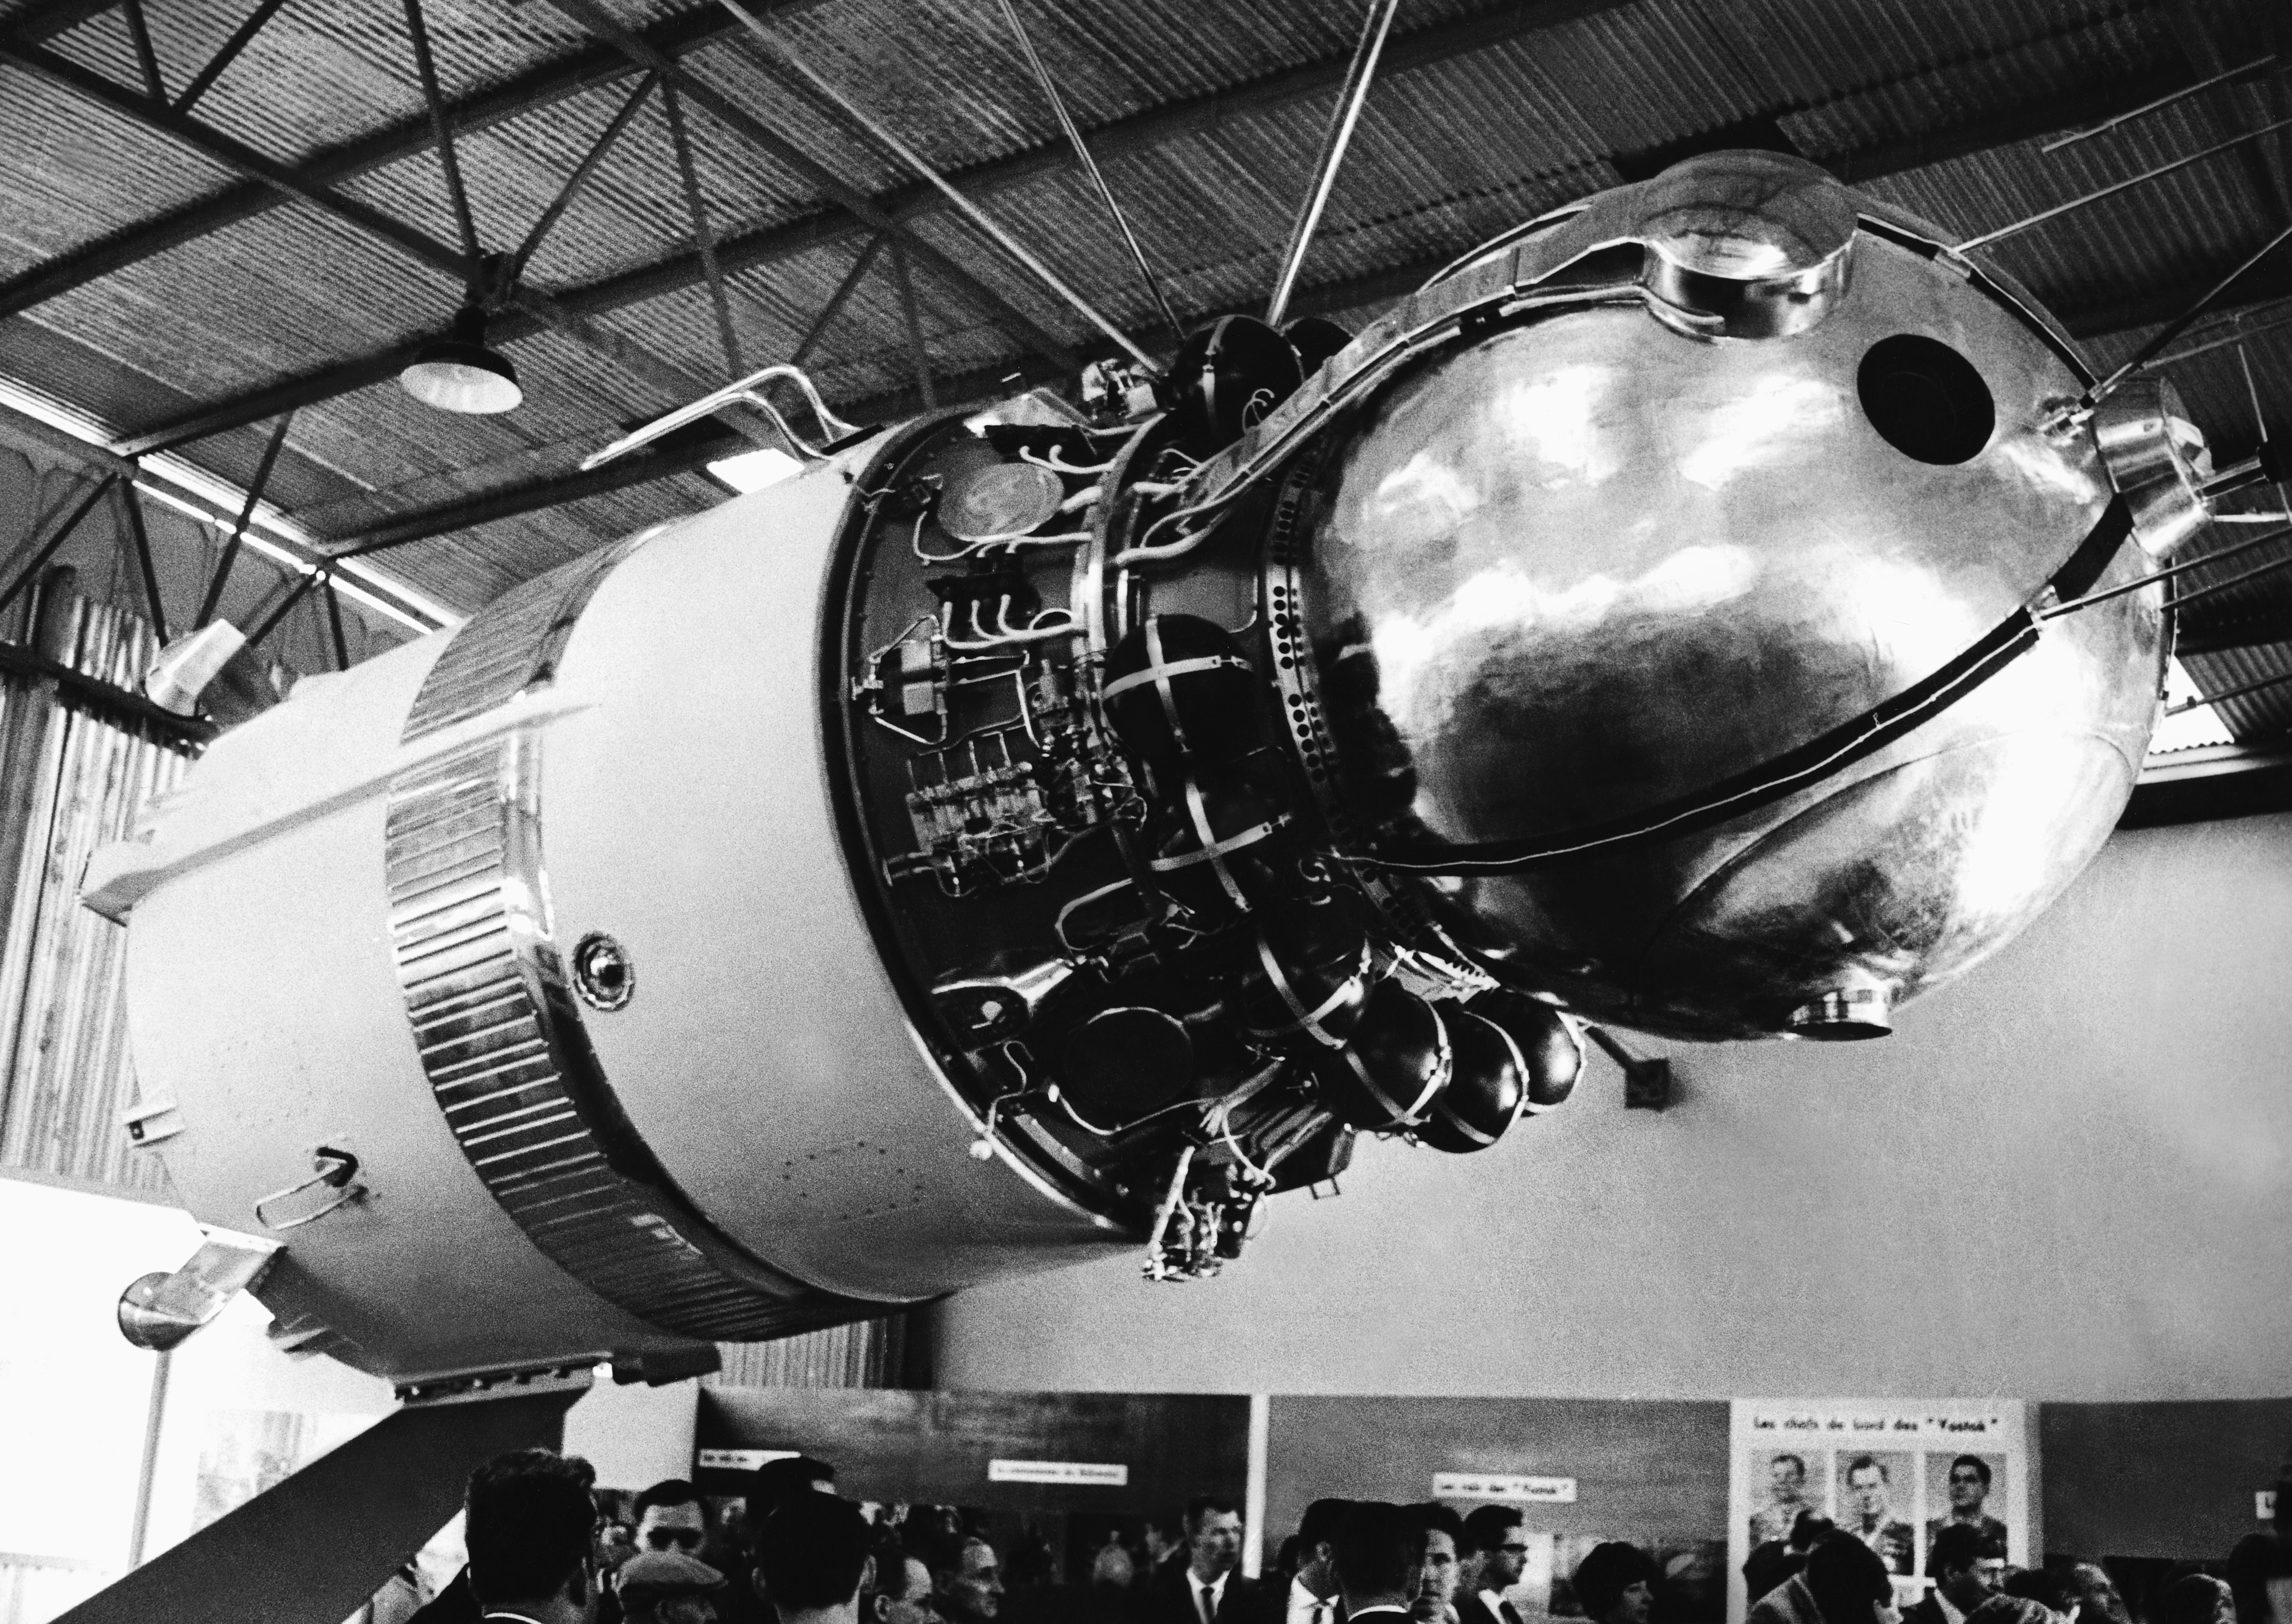 Первый корабль полетевший в космос. Восток 1 Гагарин 1961. Космический корабль Восток 1 Юрия Гагарина. Ракета Юрия Гагарина Восток-1. Космический корабль Восток Юрия Гагарина 1961.